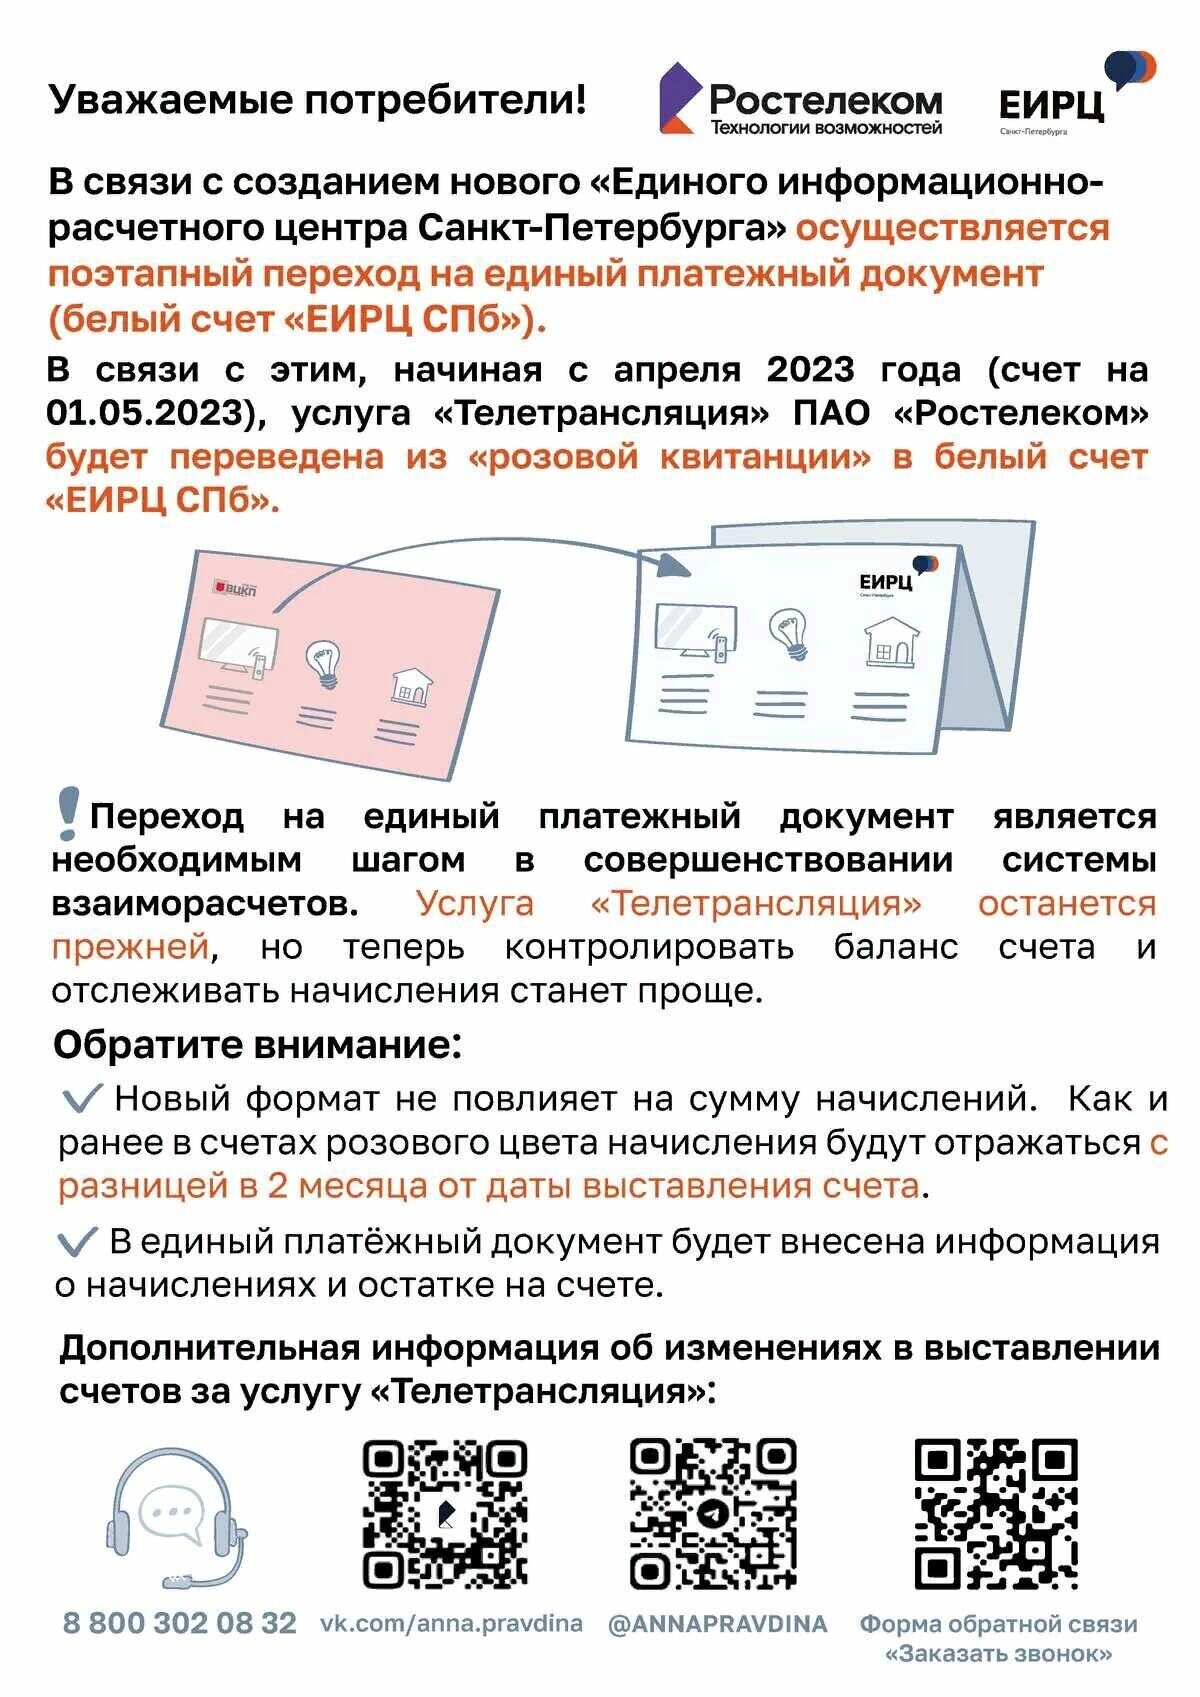 Плакат о переходе платежей ПАО Ростелеком а квитанцию ЕИРЦ СПб